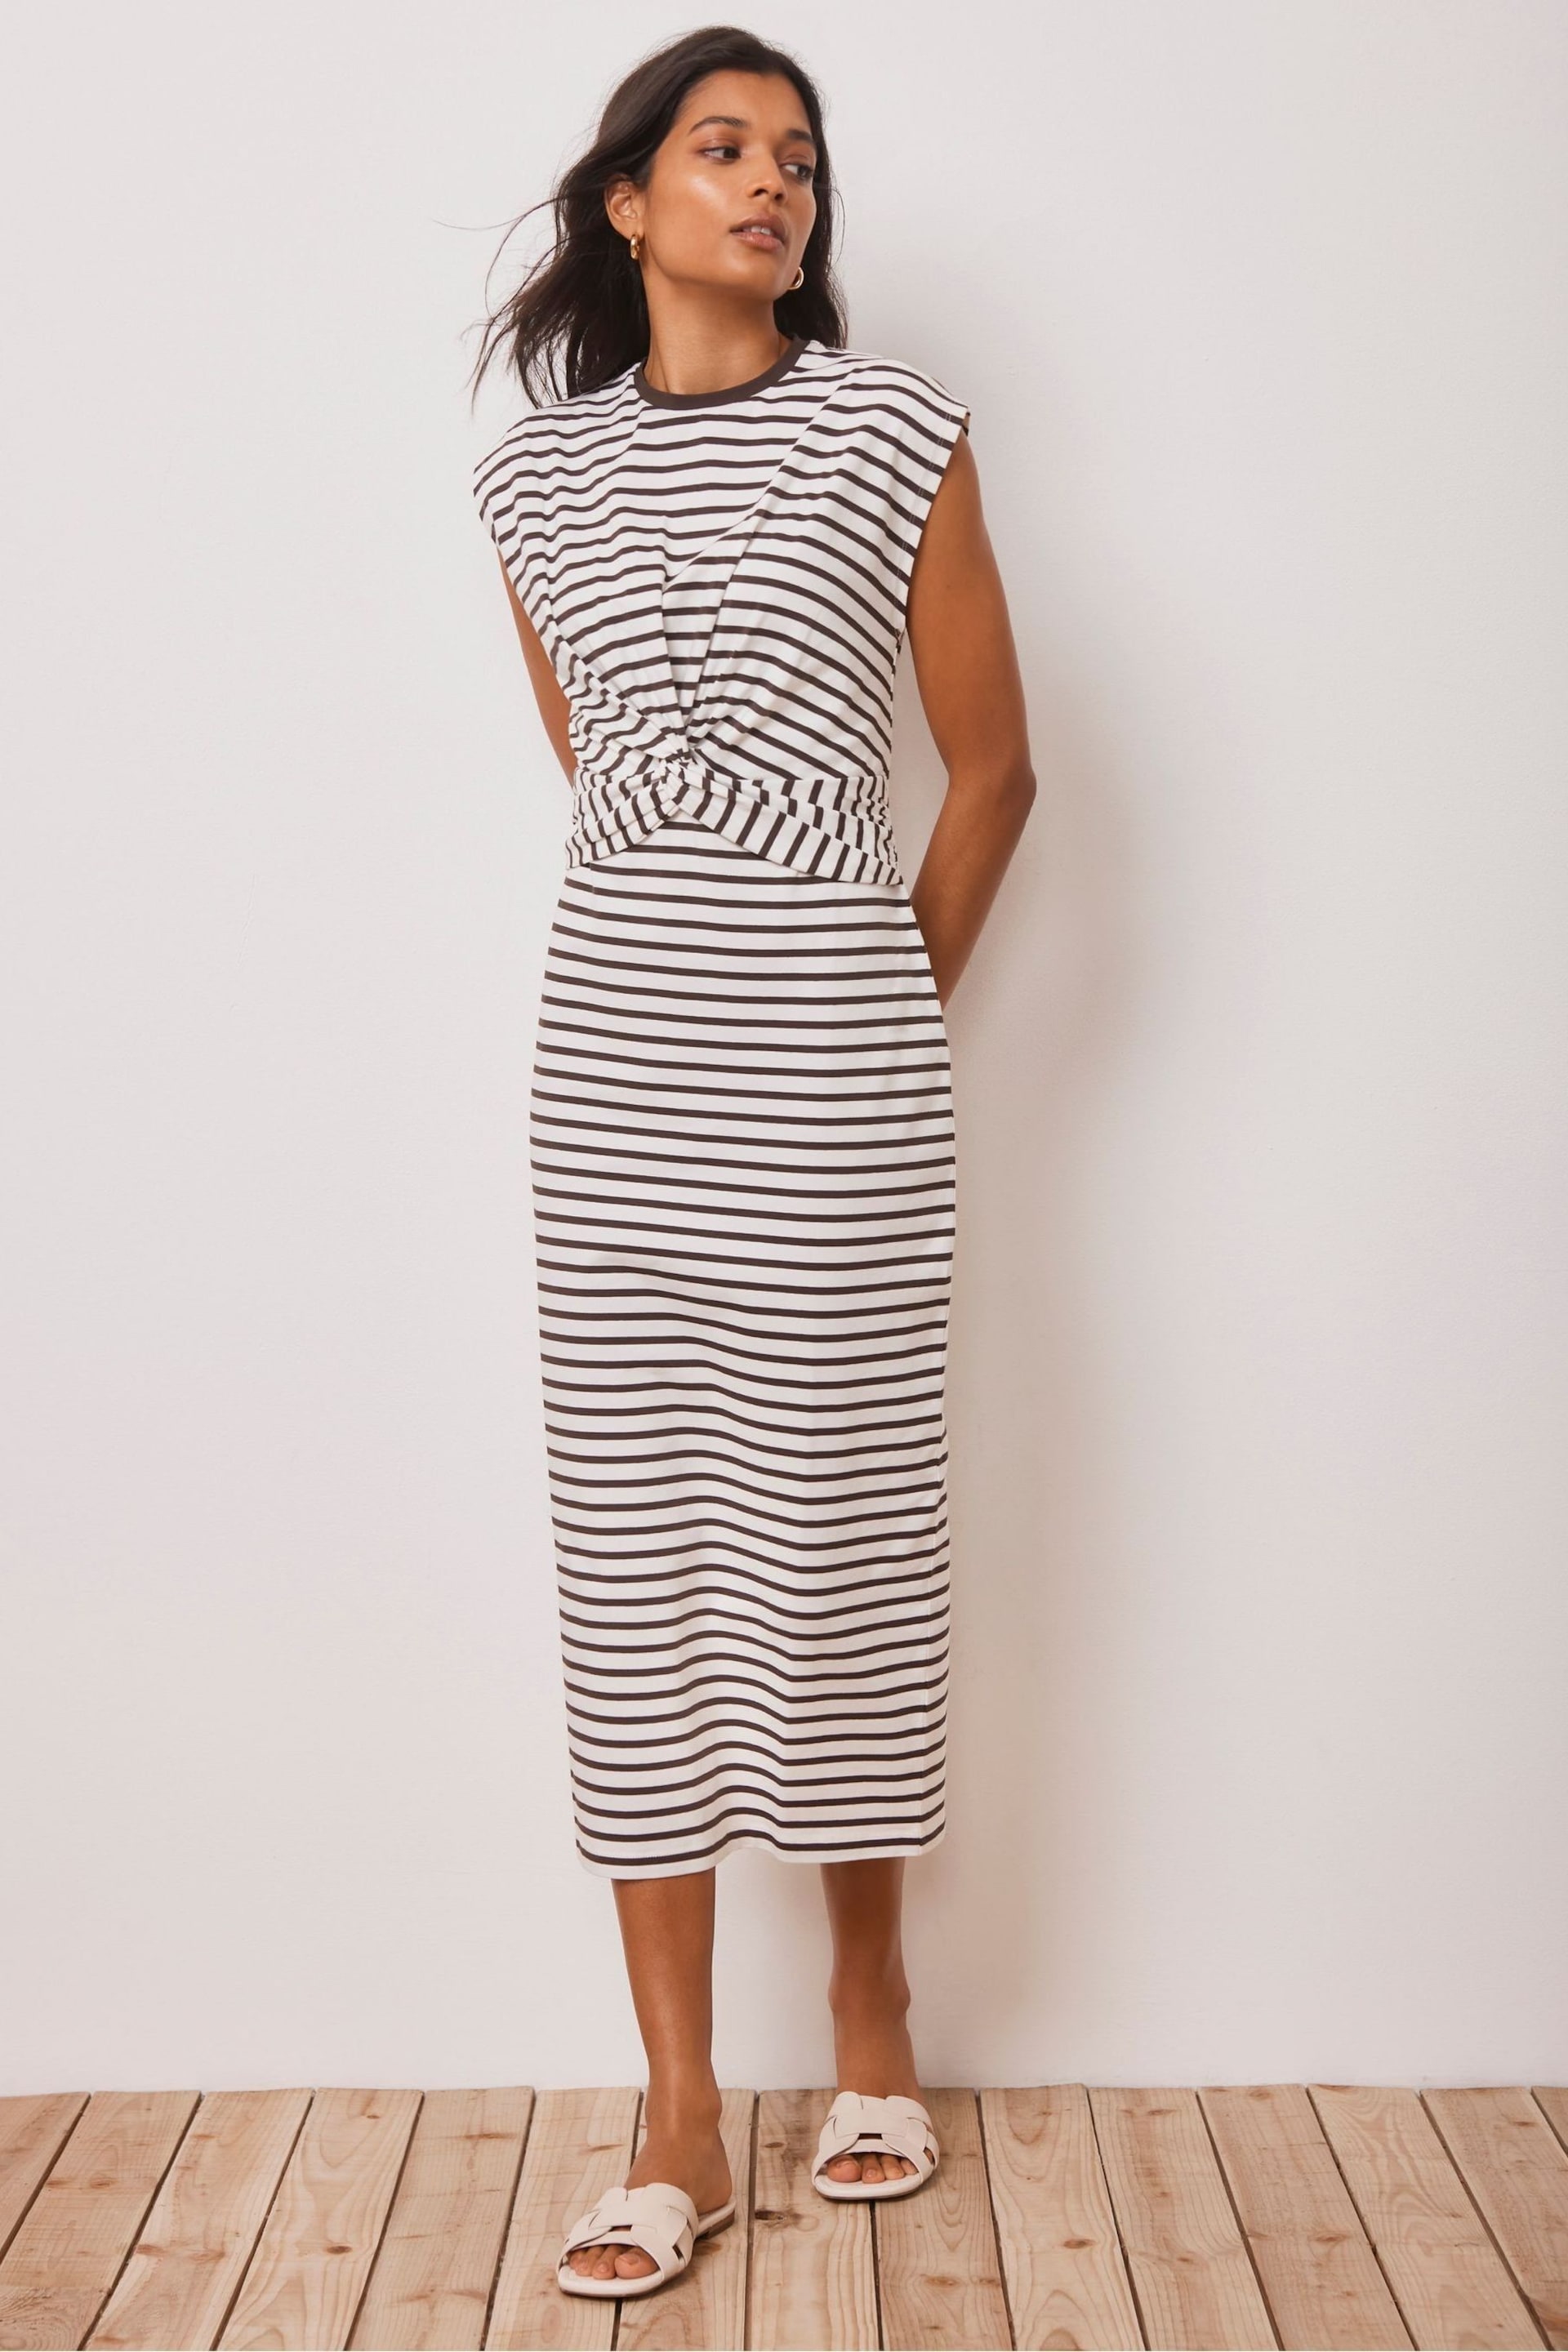 Mint Velvet Brown Twist Stripe Jersey Dress - Image 2 of 4